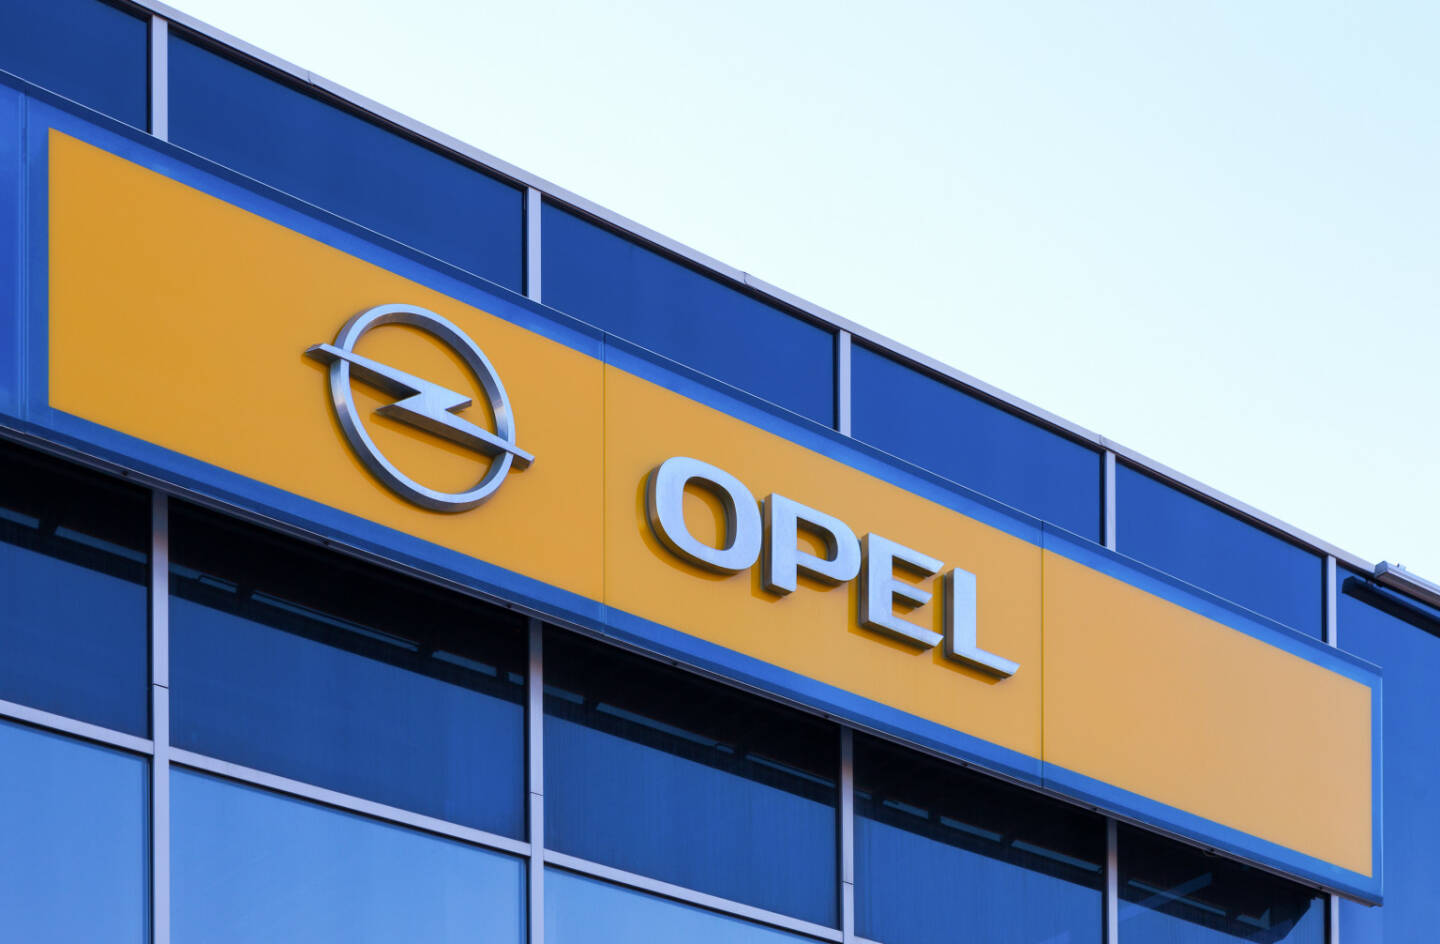 Opel Schriftzug, Logo <a href=http://www.shutterstock.com/gallery-365671p1.html?cr=00&pl=edit-00>FotograFFF</a> / <a href=http://www.shutterstock.com/editorial?cr=00&pl=edit-00>Shutterstock.com</a>